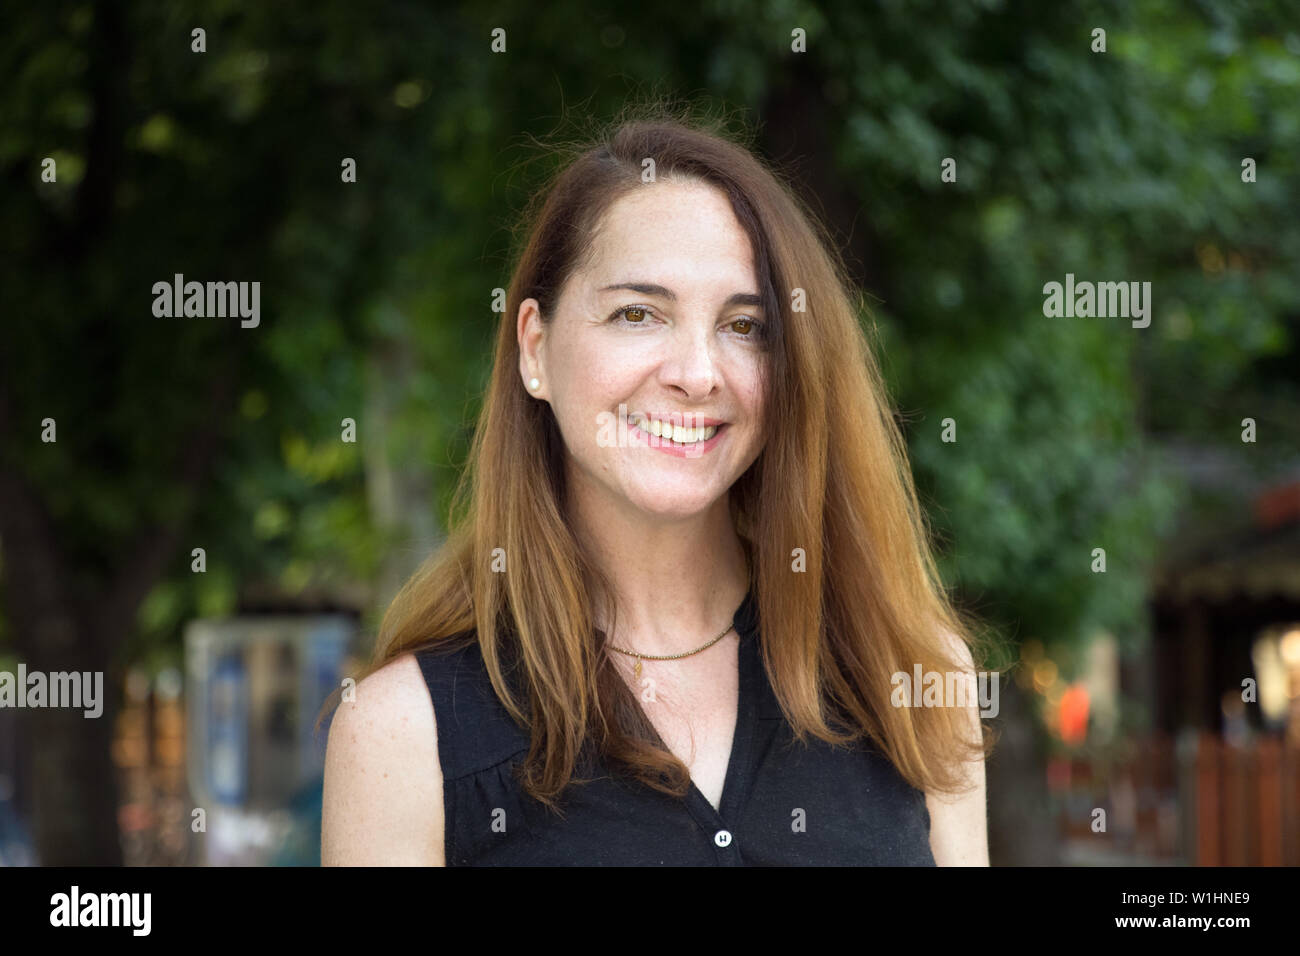 Ritratto di una donna matura, 40s, sorridente guardando la fotocamera all'aperto in una città. Foto Stock